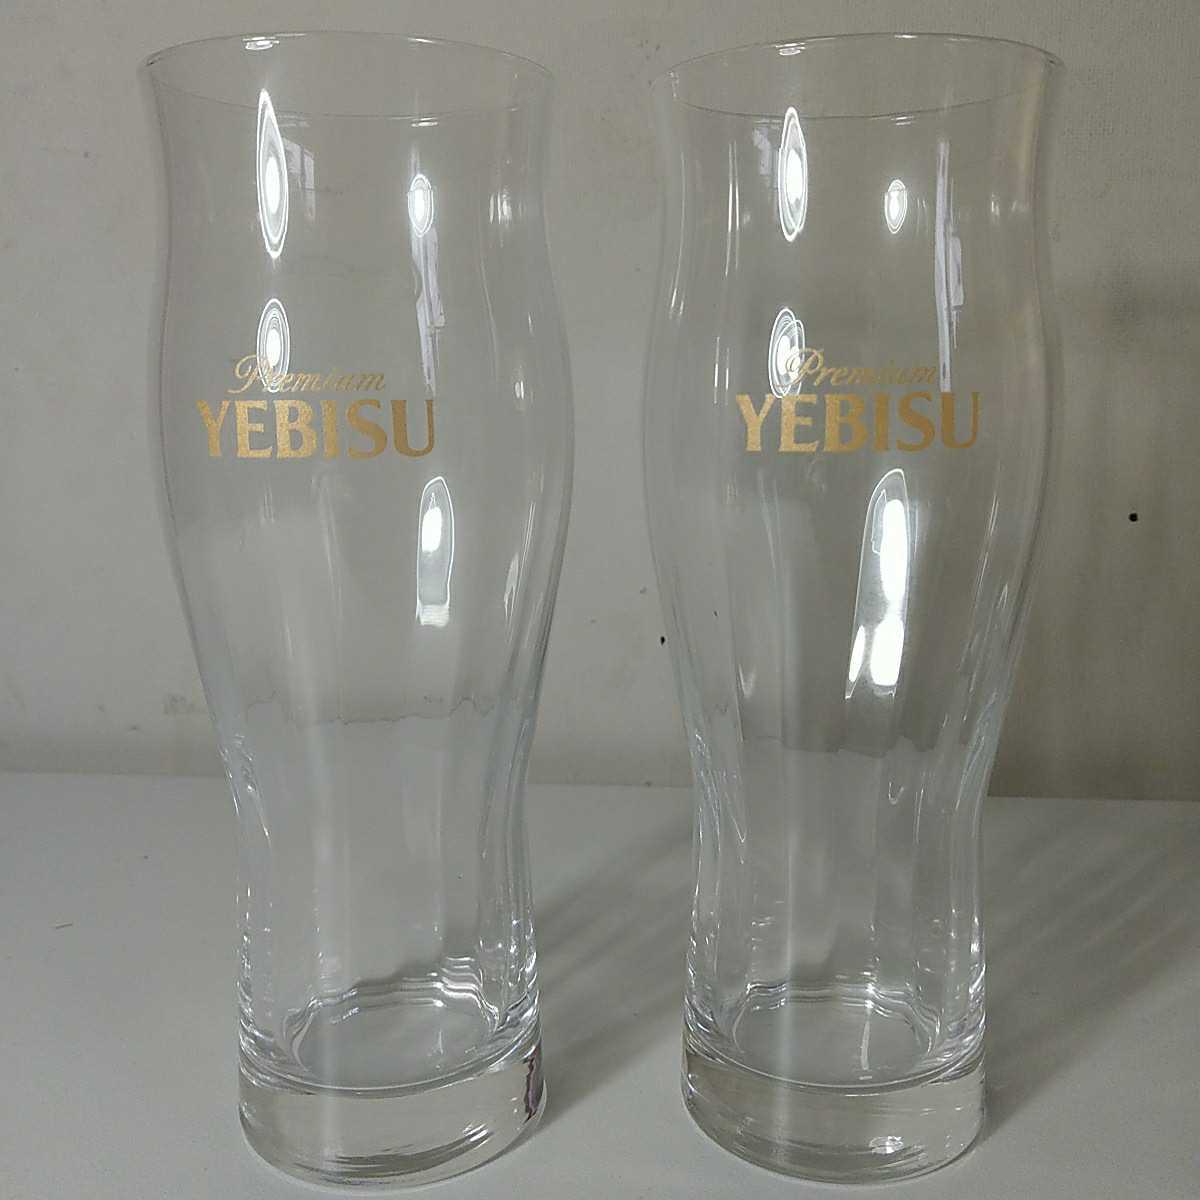 ヱビス特製 ハレの日ペアグラス 新品 未使用 ビールグラス BEER 日本製 家飲み タンブラーグラス ガラス製 ノベルティ 非売品 ペア 2個の画像2